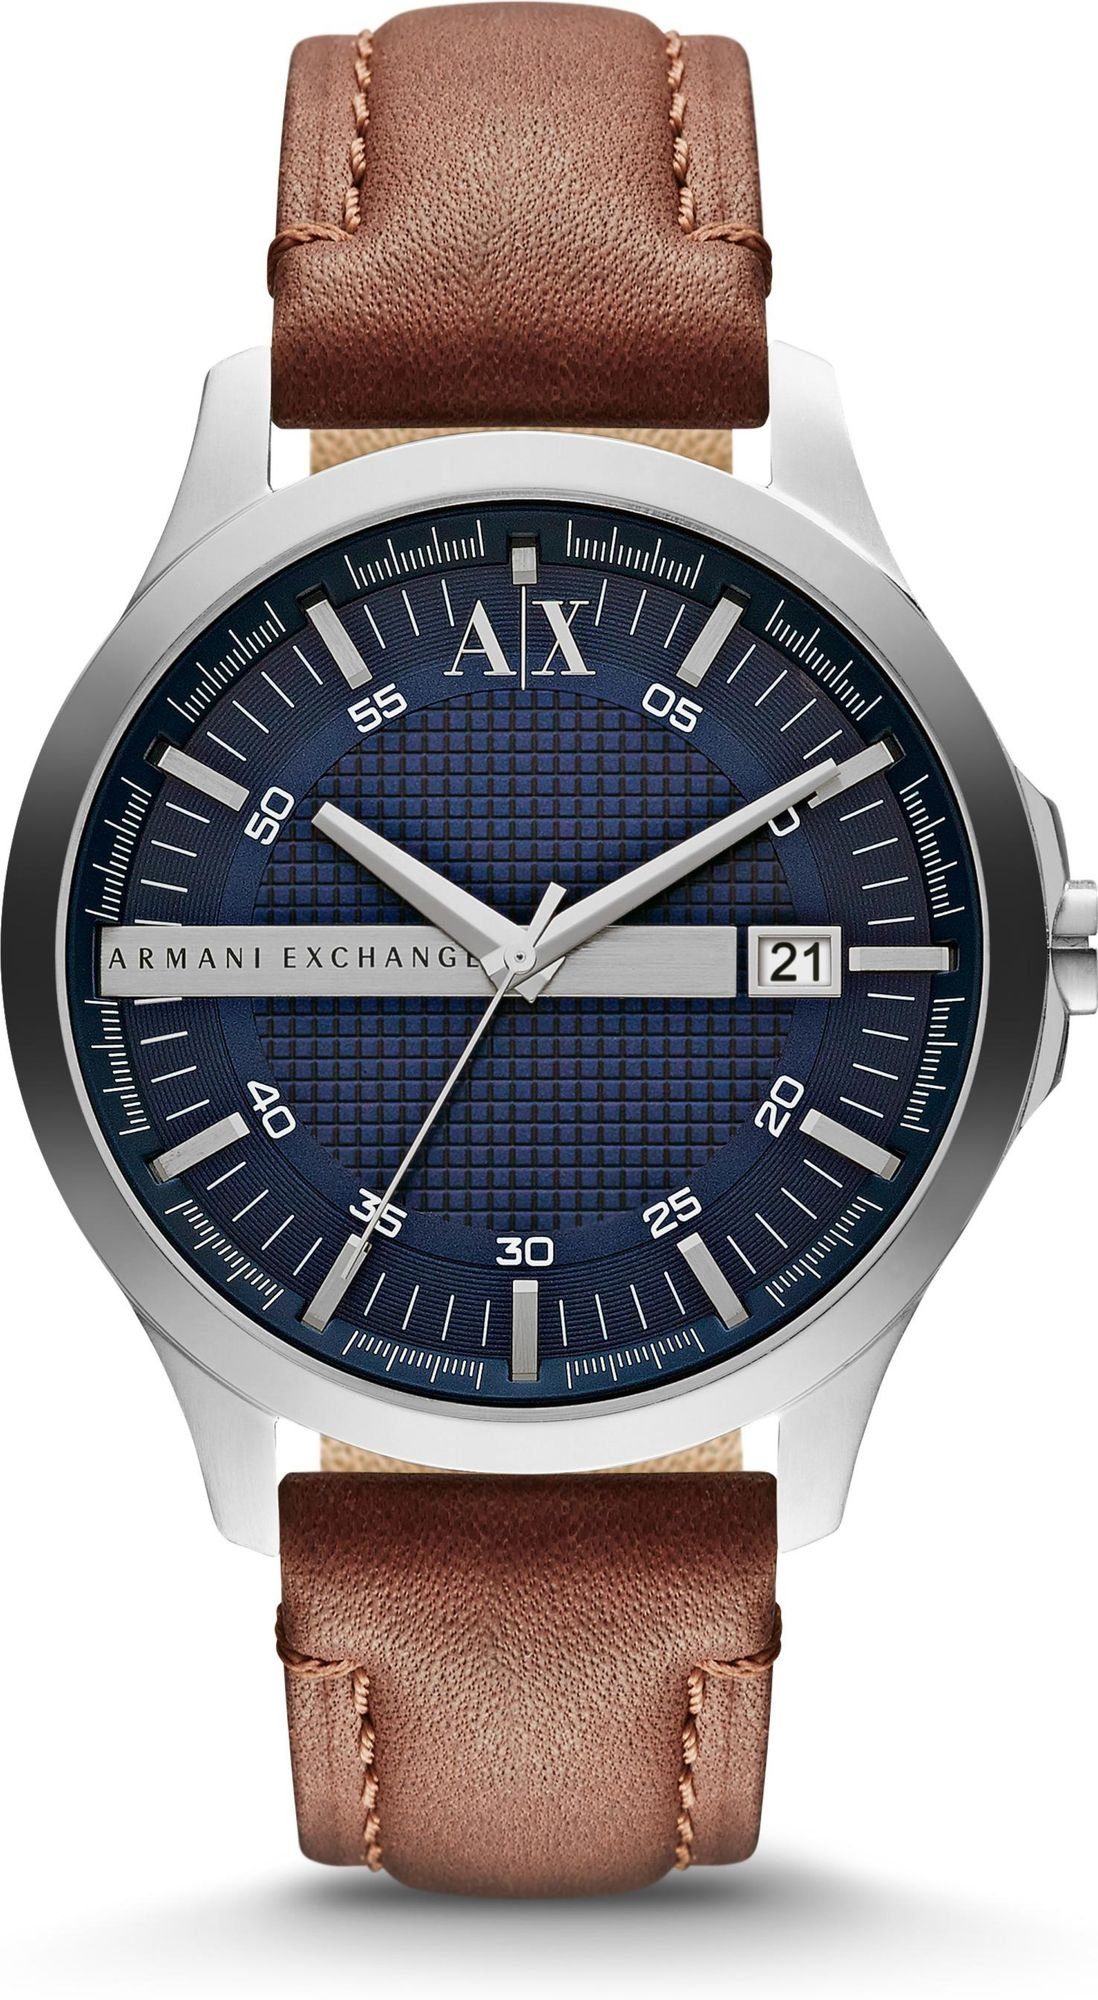 Herren Uhren ARMANI EXCHANGE Quarzuhr Armani Exchange 3 ZEIGER AX2133 Herrenarmbanduhr Design Highlight, Design Highlight